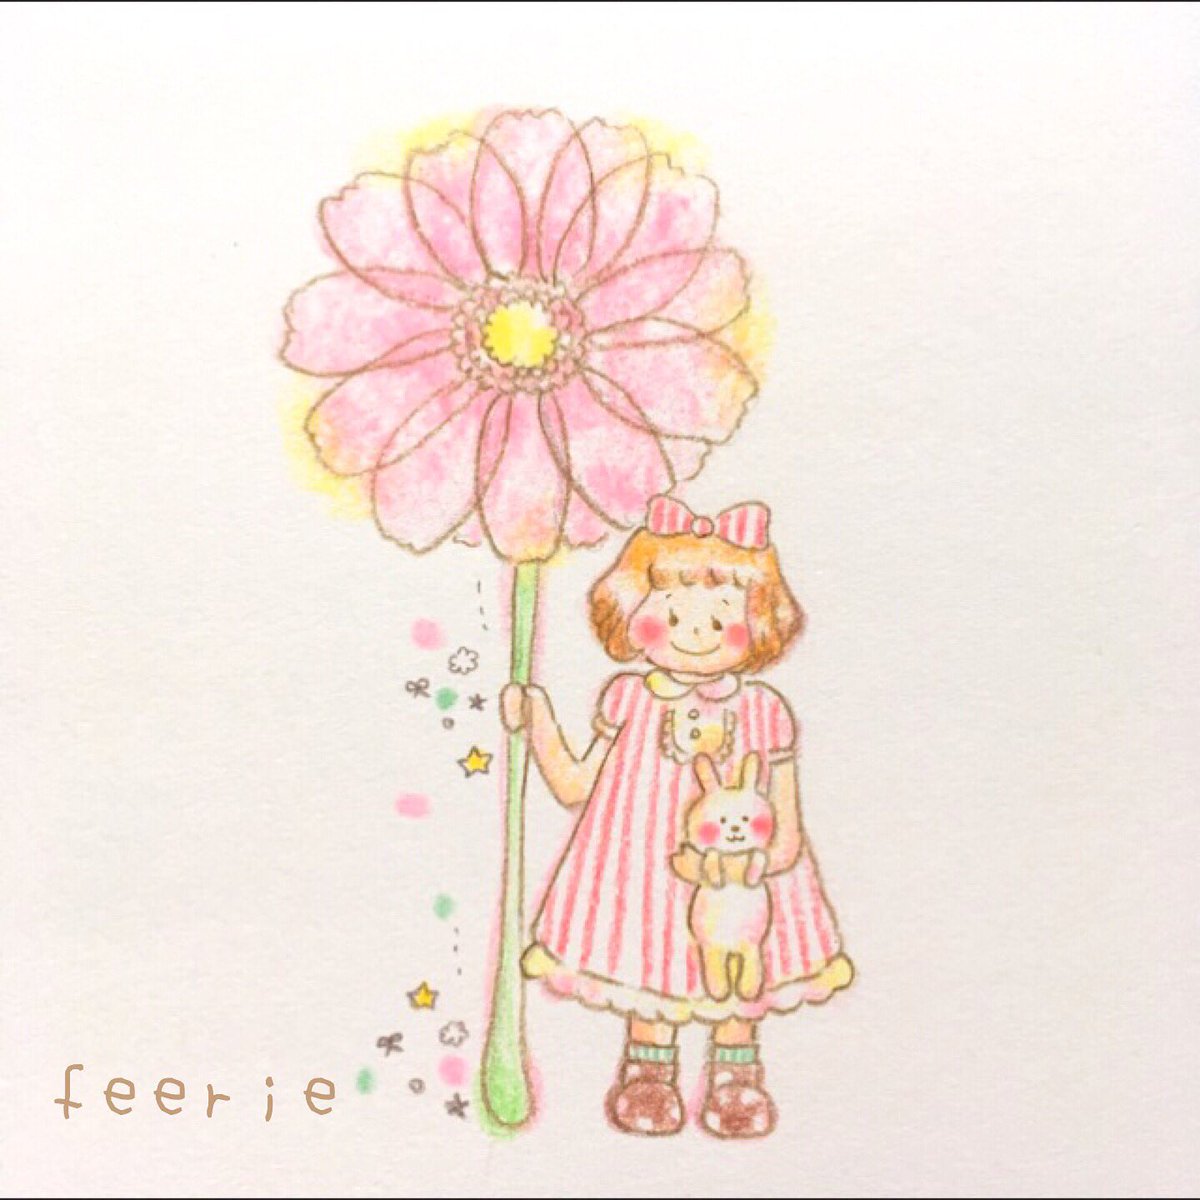 Feerie Sur Twitter 満月の日に かわいいピンク色の ガーベラを買いました 自分のために お花を買うのははじめてで ちょっとドキドキ お部屋で お花が可愛く笑っていると うれしいな イラスト 色鉛筆 イラストレーター Illus Illustrator